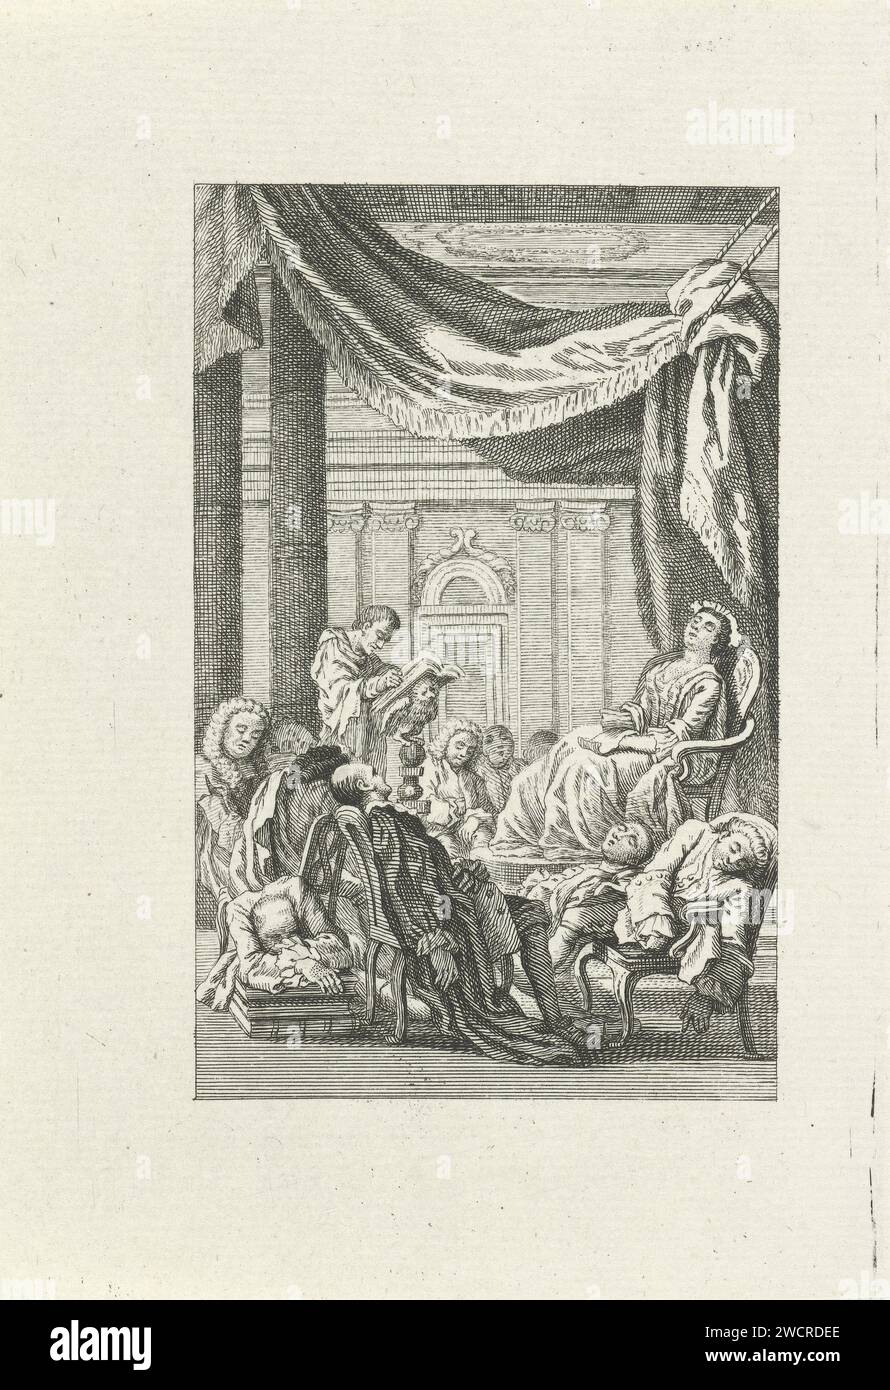 Schlafende Figuren unter einem Baldachin, Jacob Folkema, 1702 - 1767 Druck während einer Rede, alle Zuhörer schlief unter einem Baldachin ein. Sogar der Redner war beim Schlafen hinter seinem Schreibtisch durcheinander. Papierätzung schlafend; Bewusstlosigkeit. Das Publikum  Kunstdarbietung Stockfoto